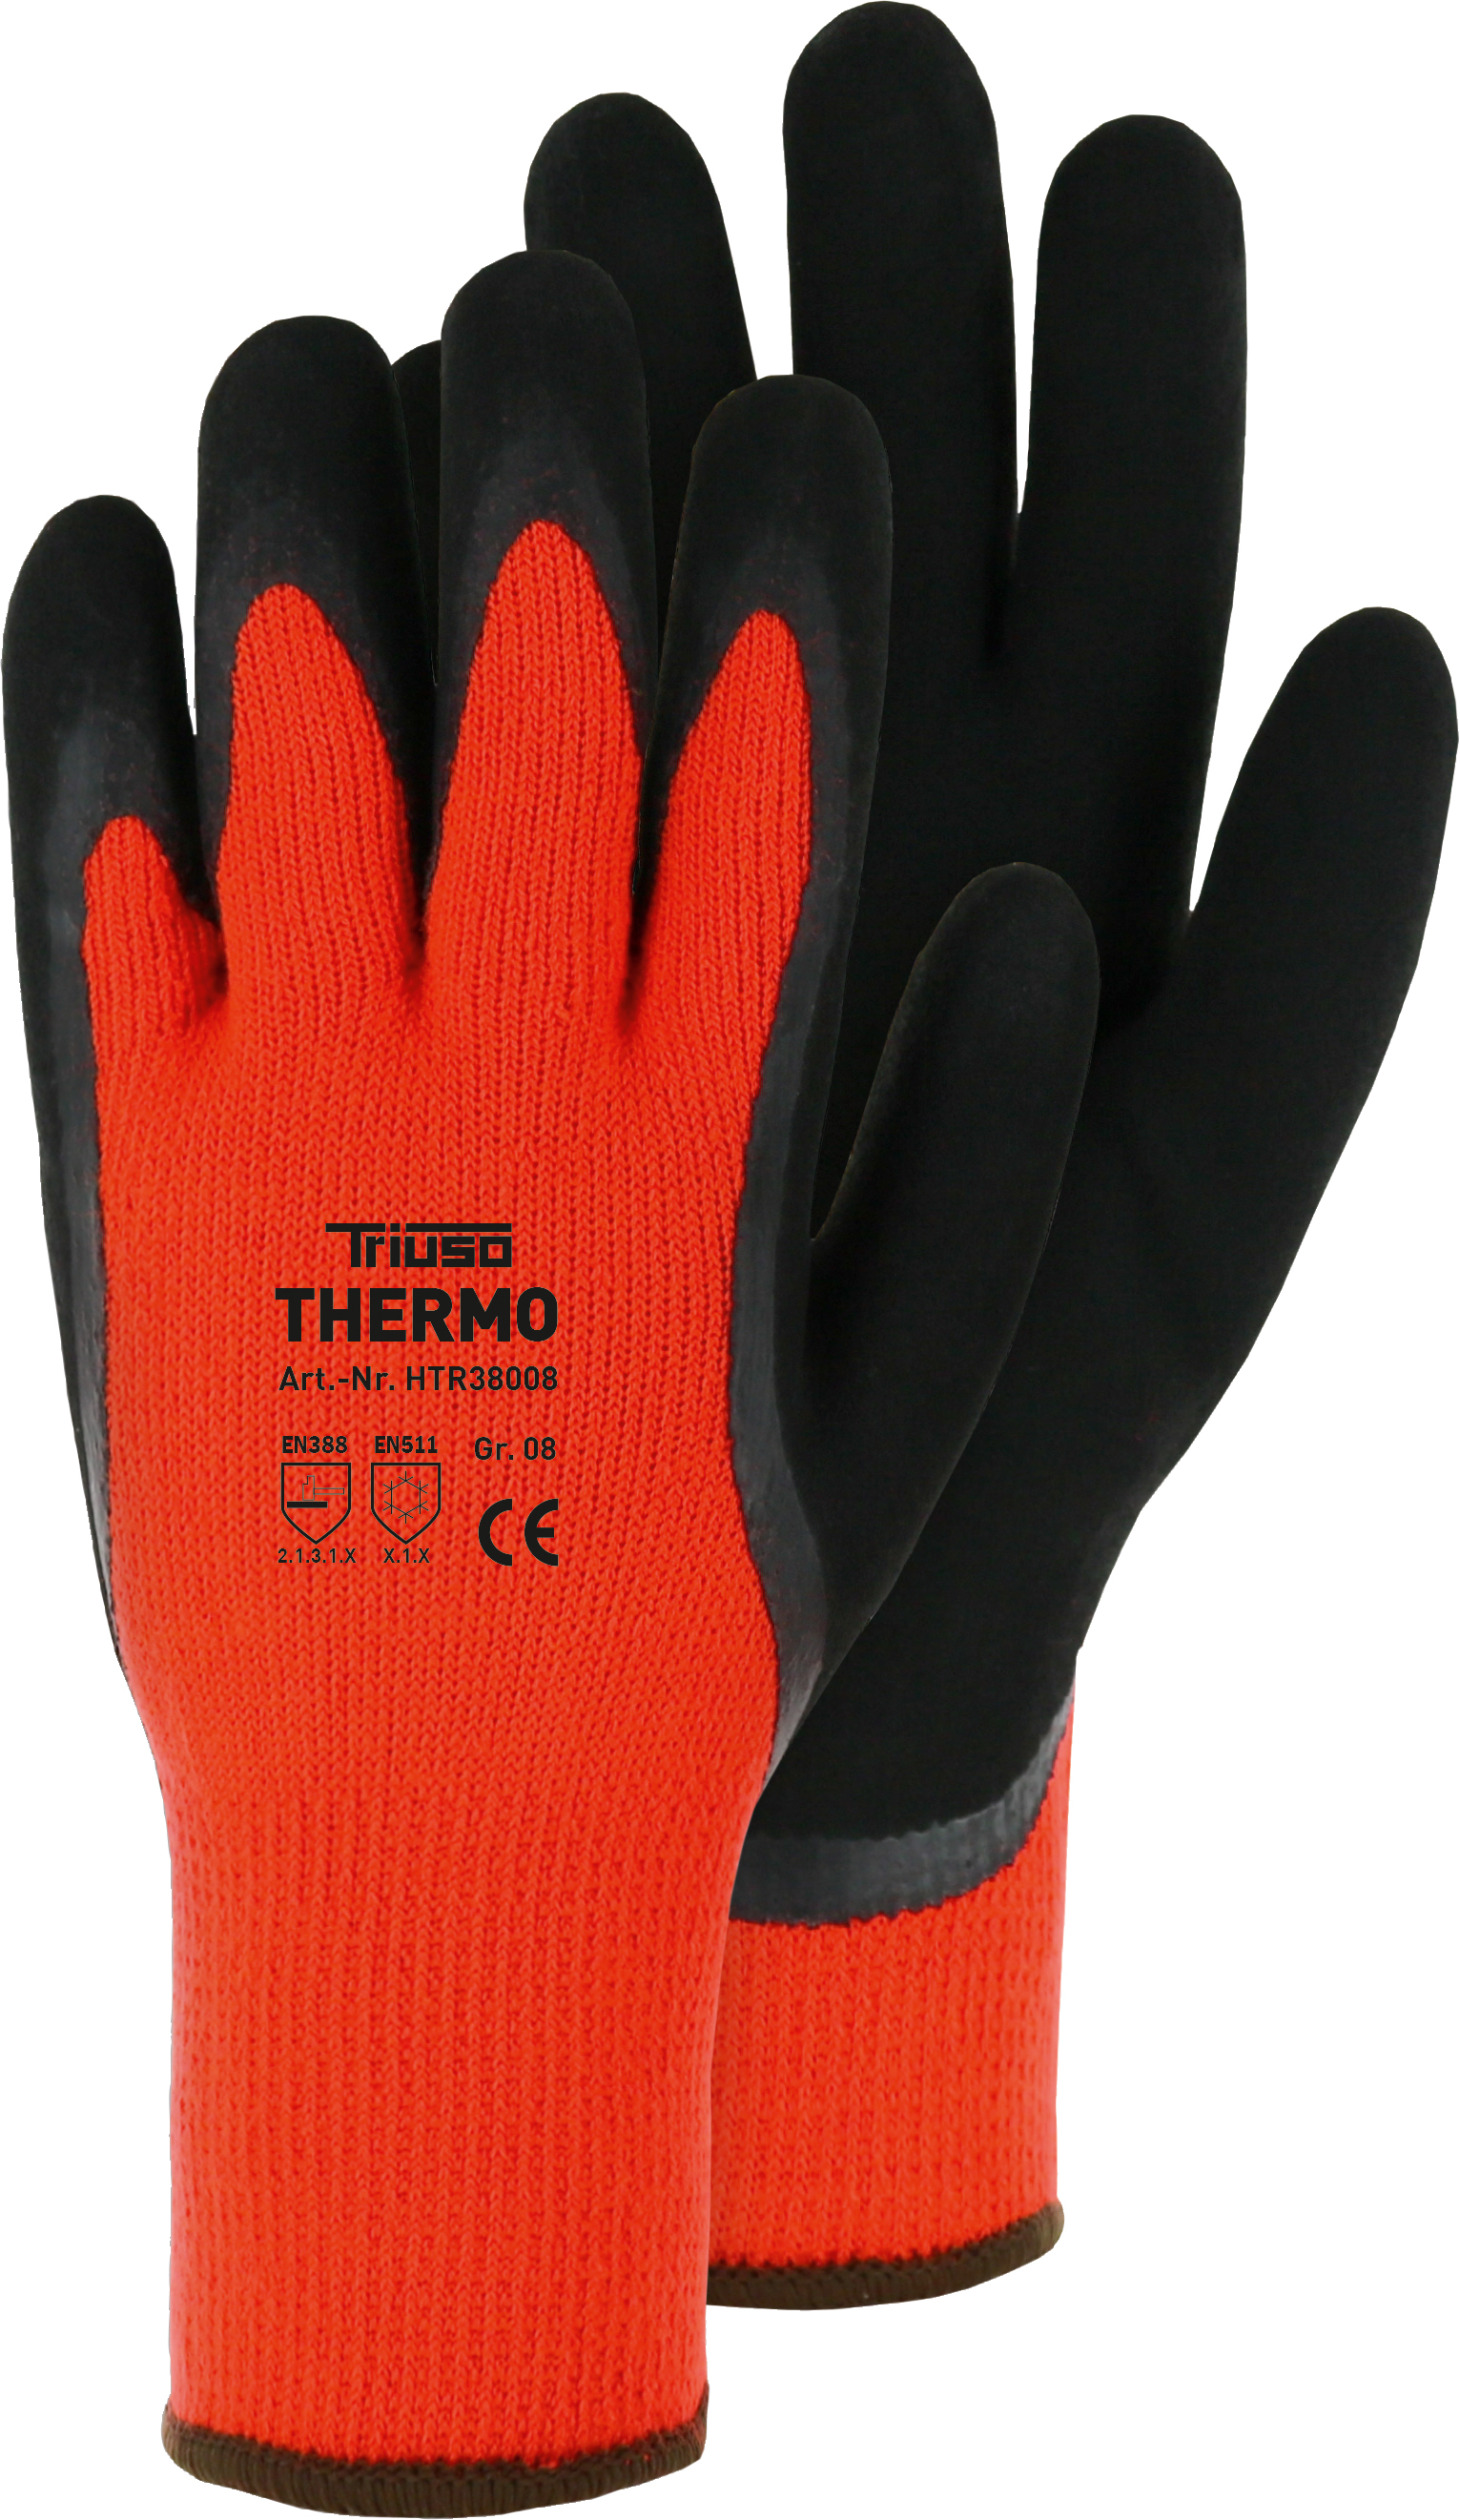 Triuso Thermo-Handschuh, orange Gr. 7